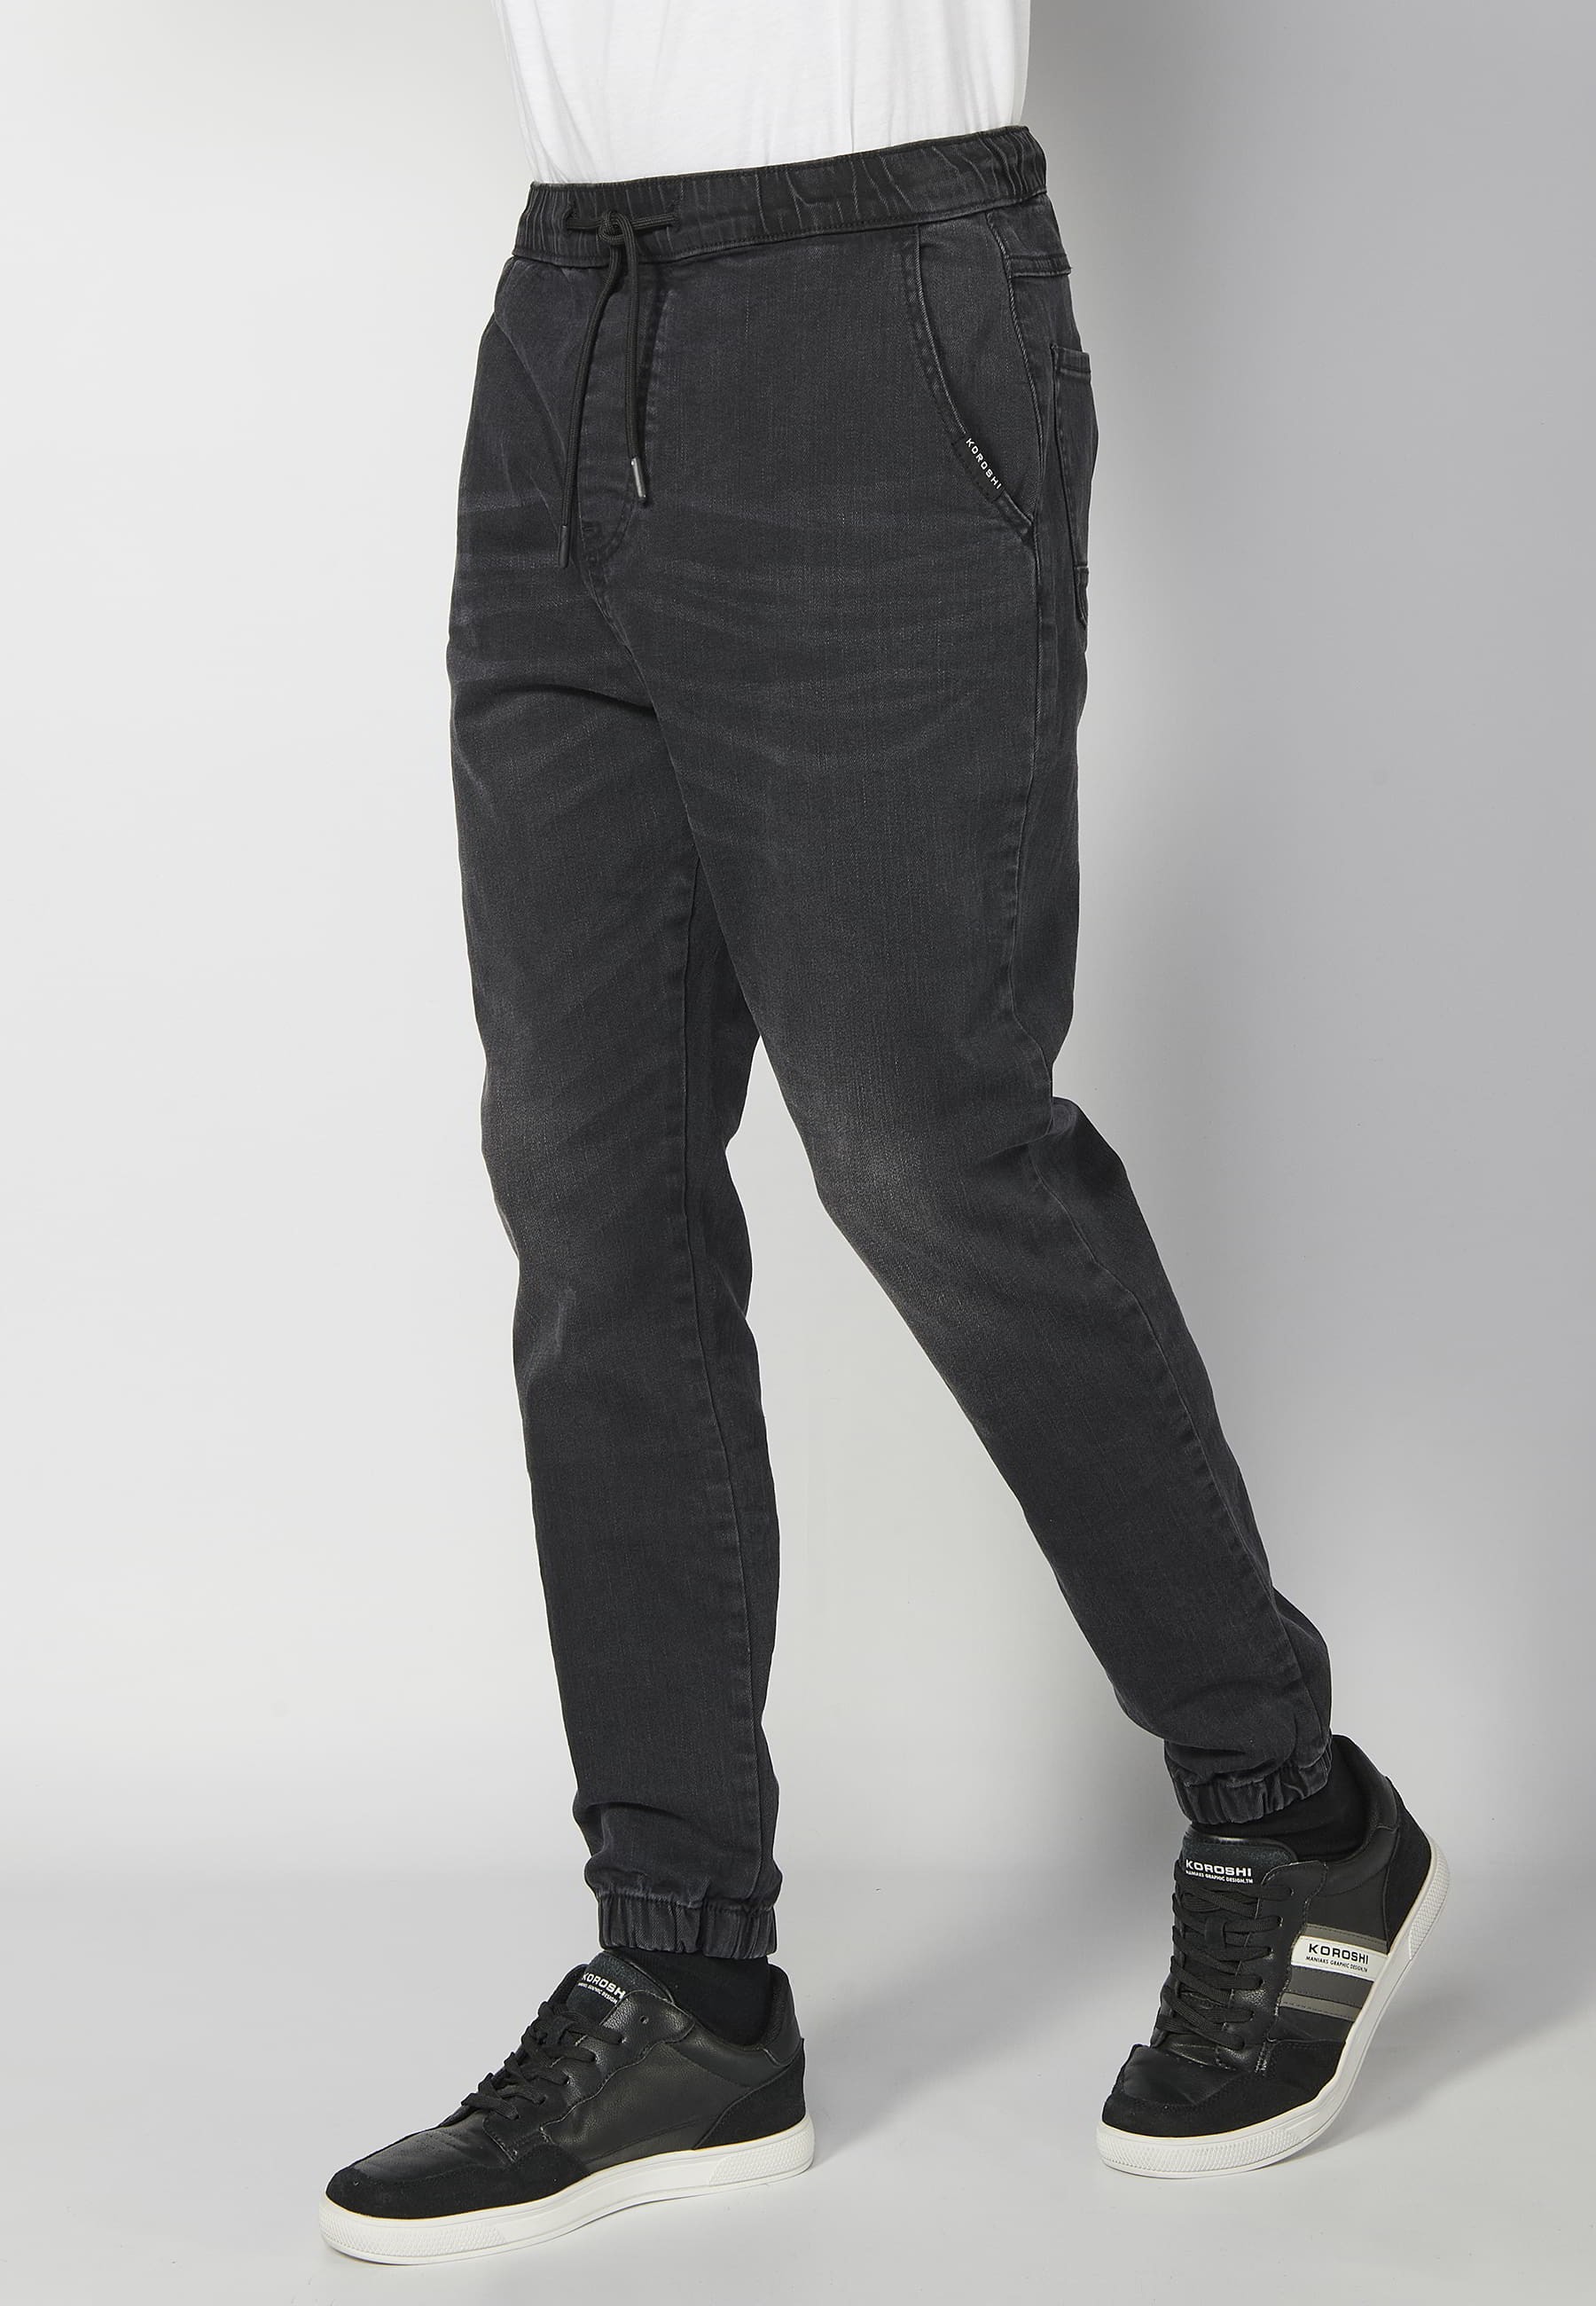 Pantalon de jogging long noir taille élastique pour Homme 6